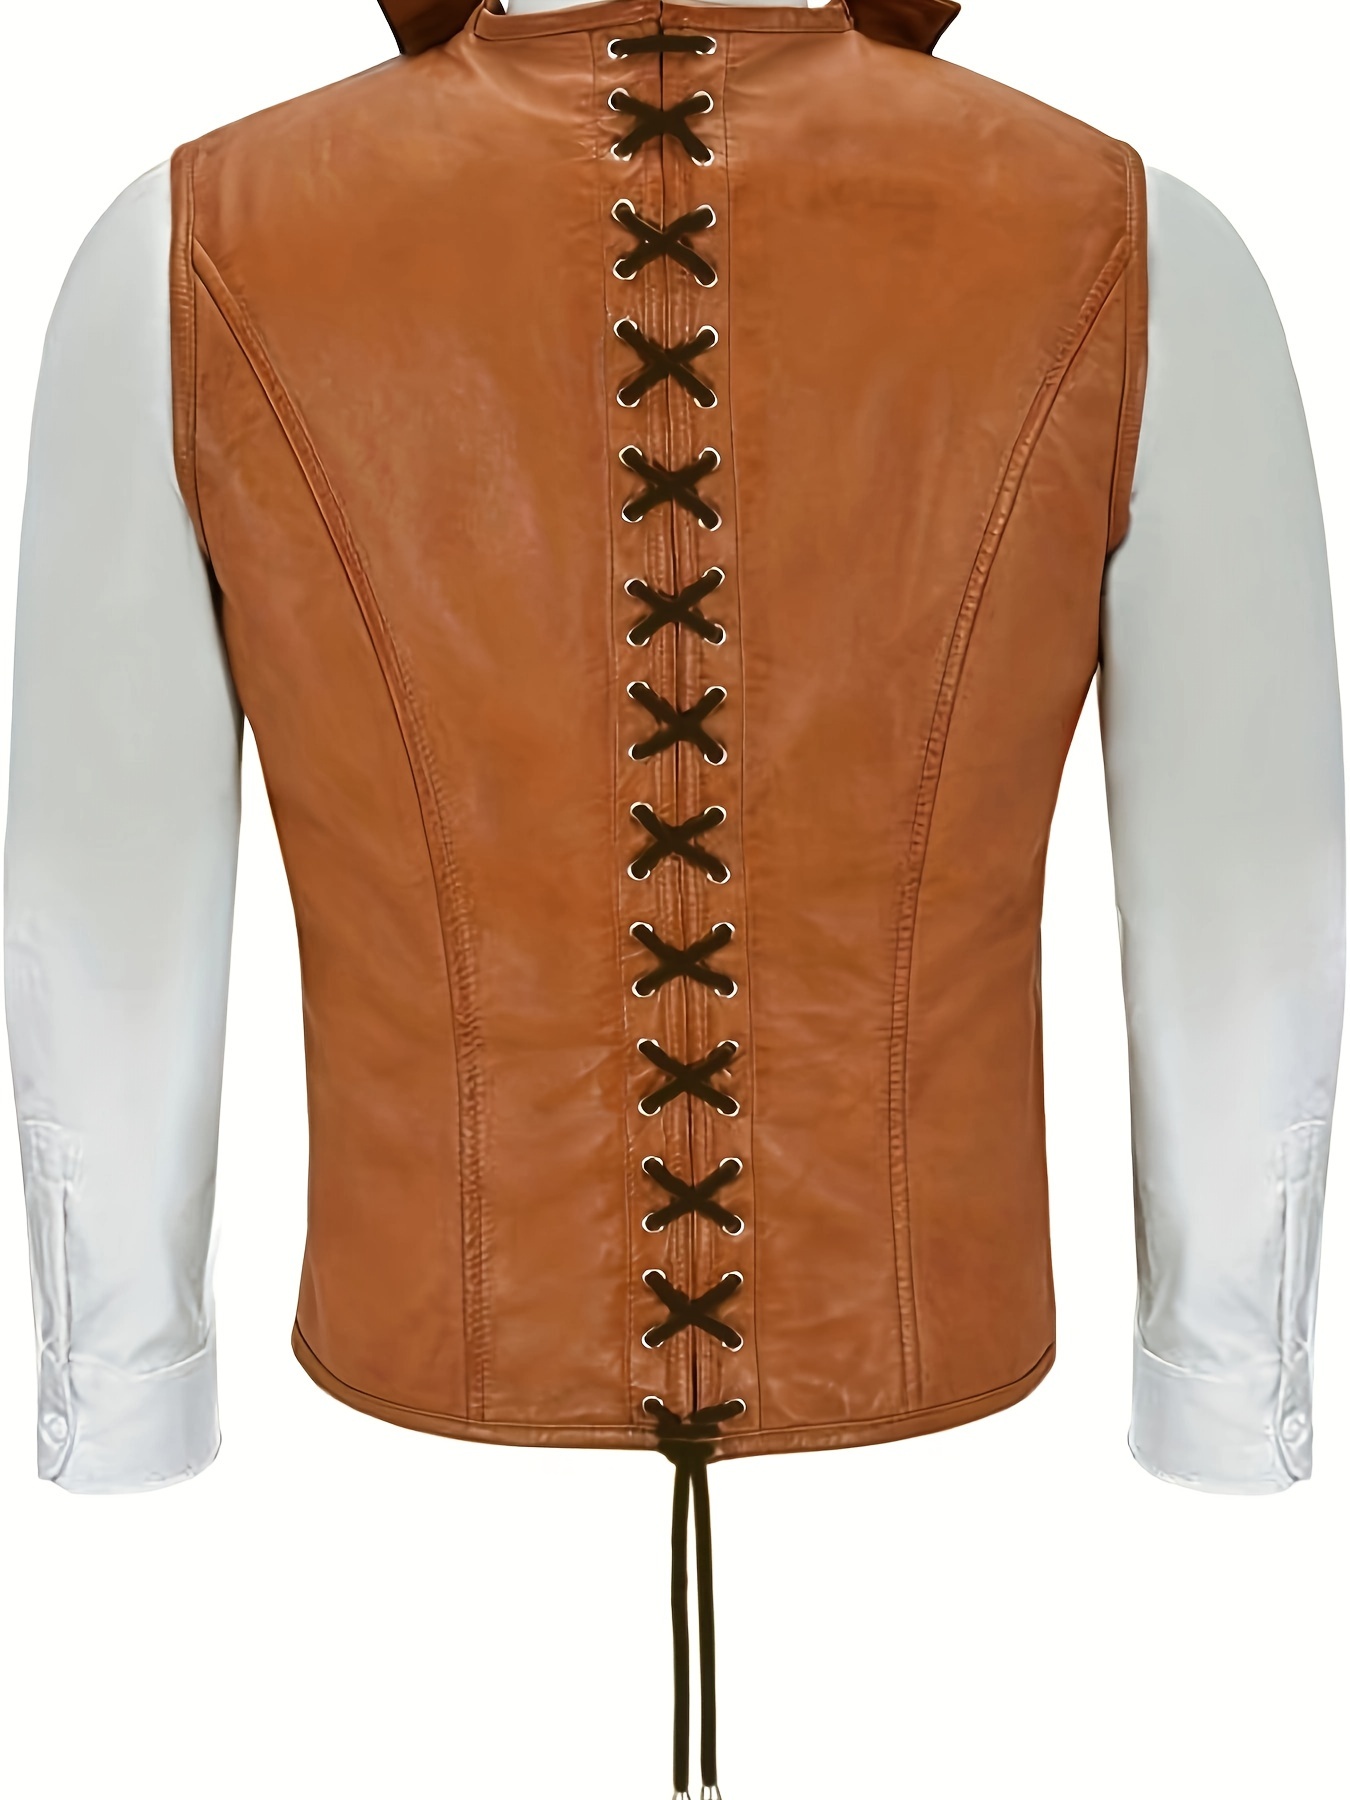 Medieval leather vest